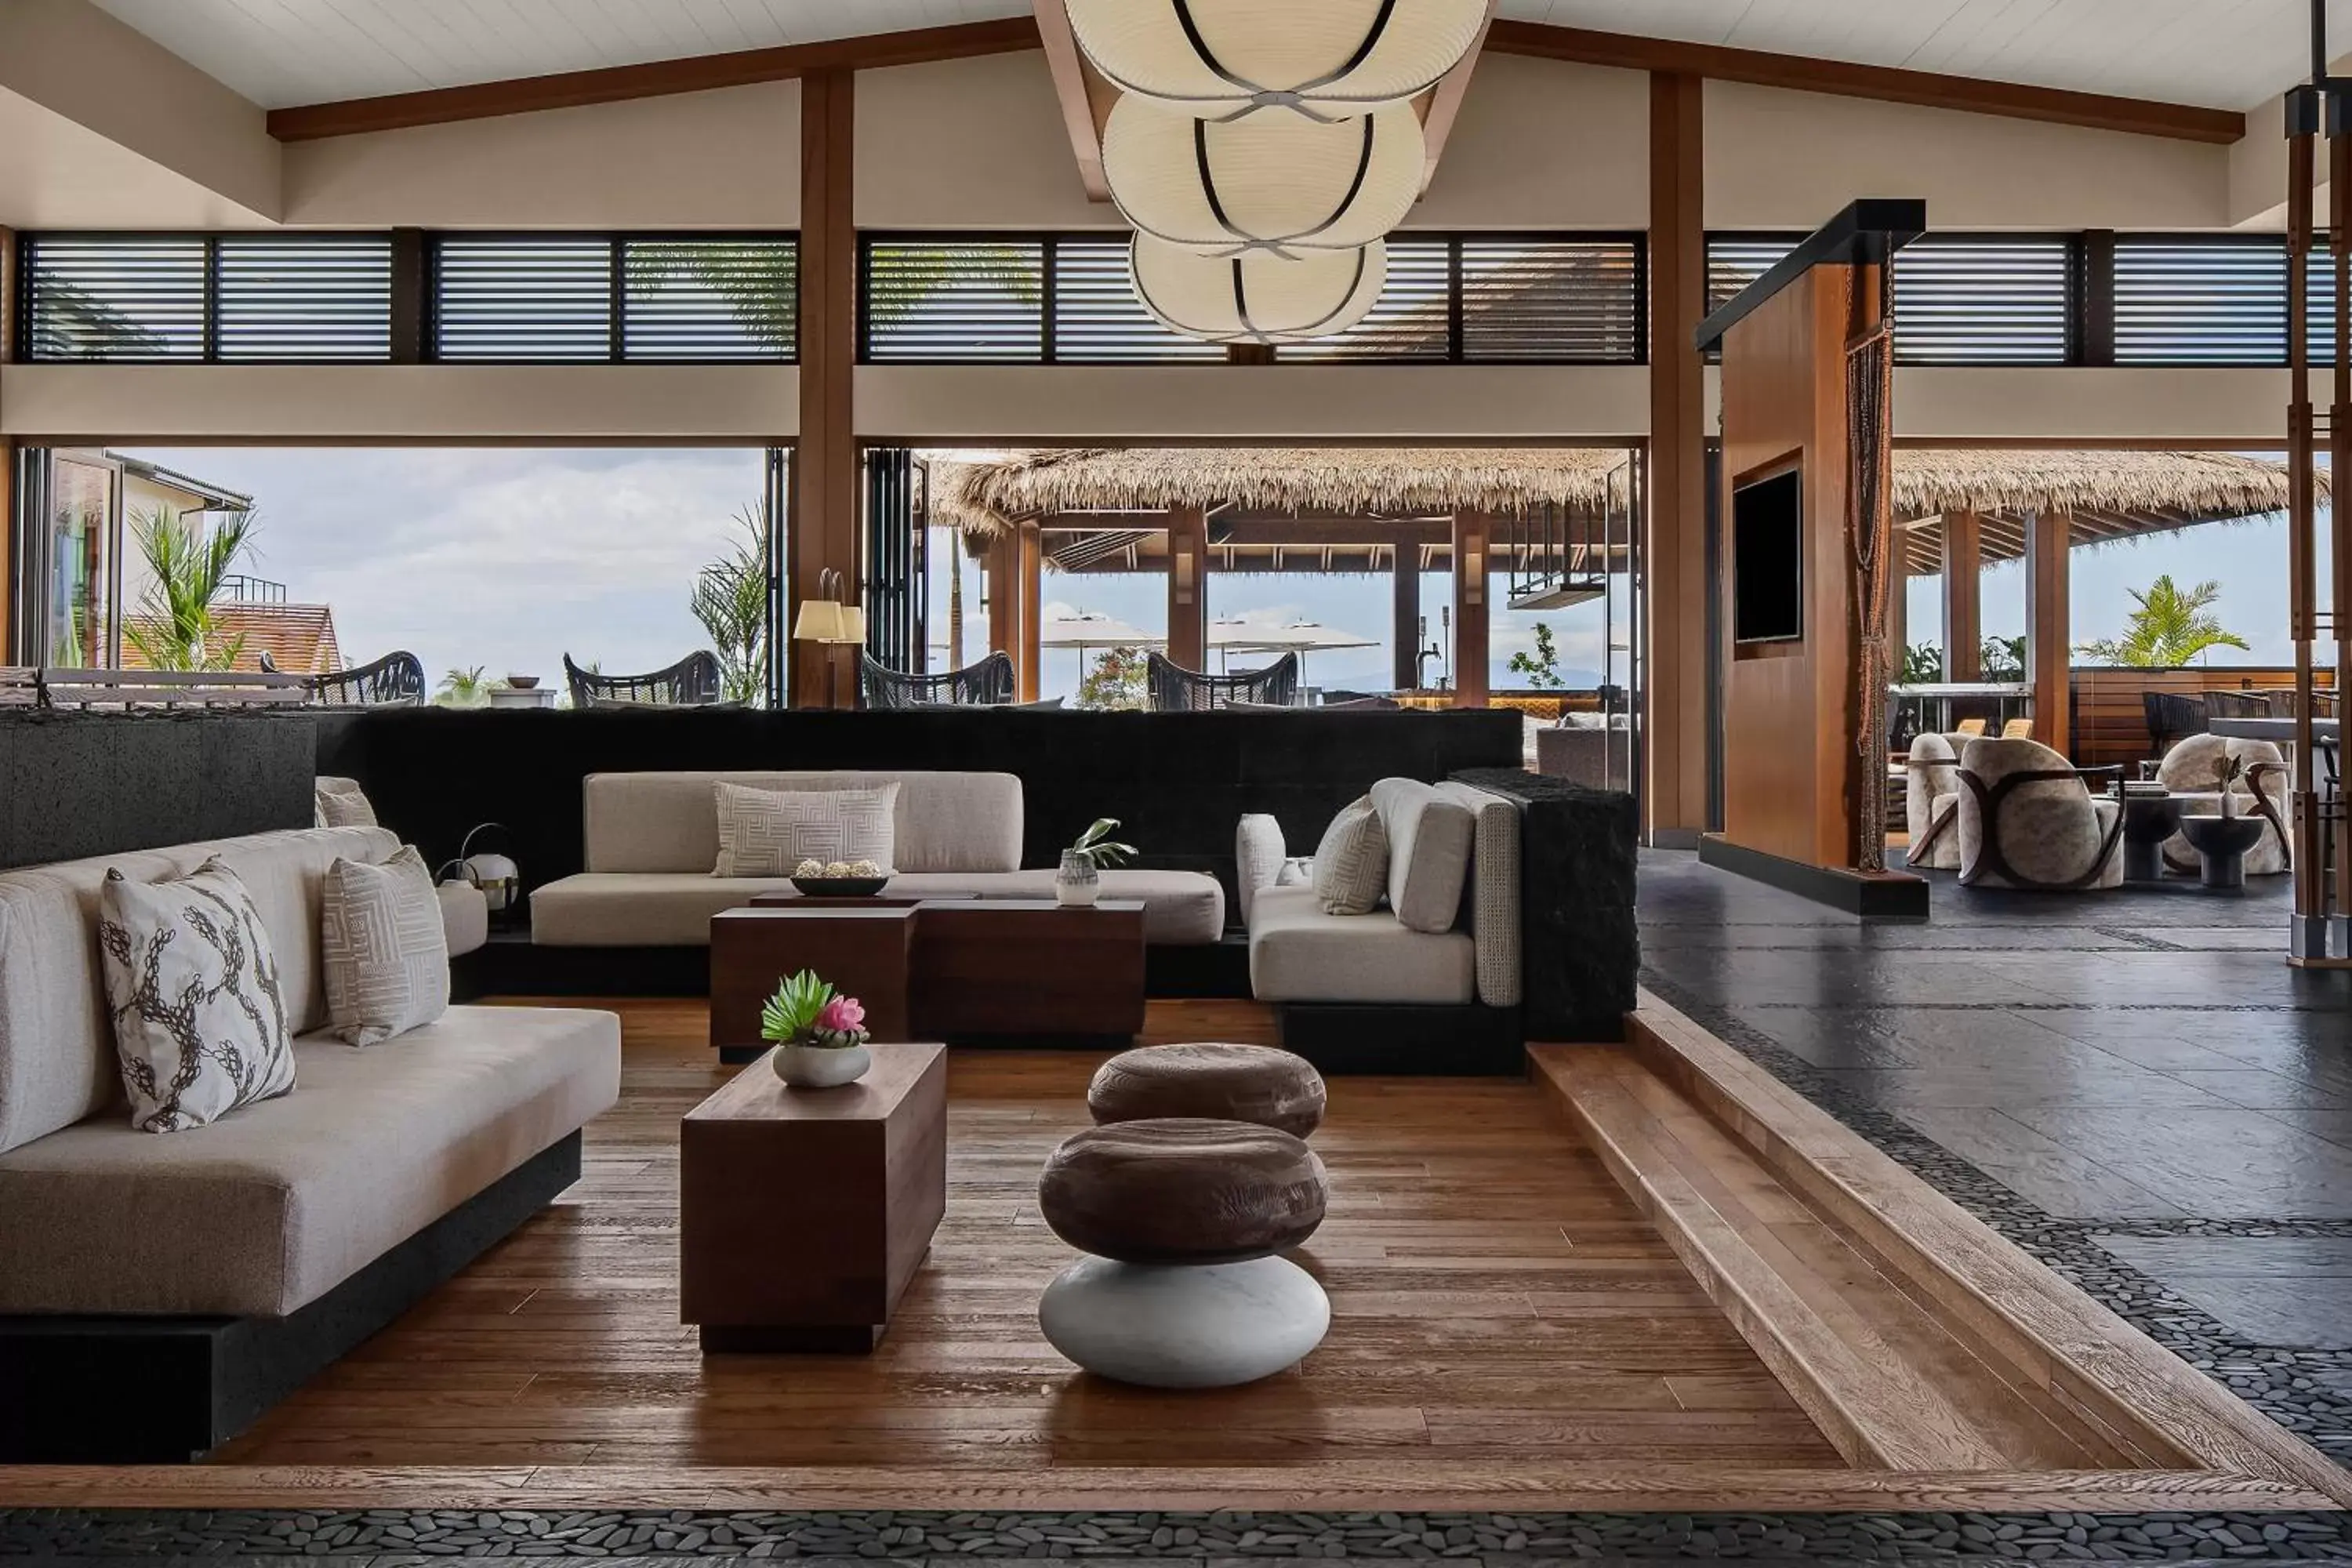 Lobby or reception in AC Hotel by Marriott Maui Wailea